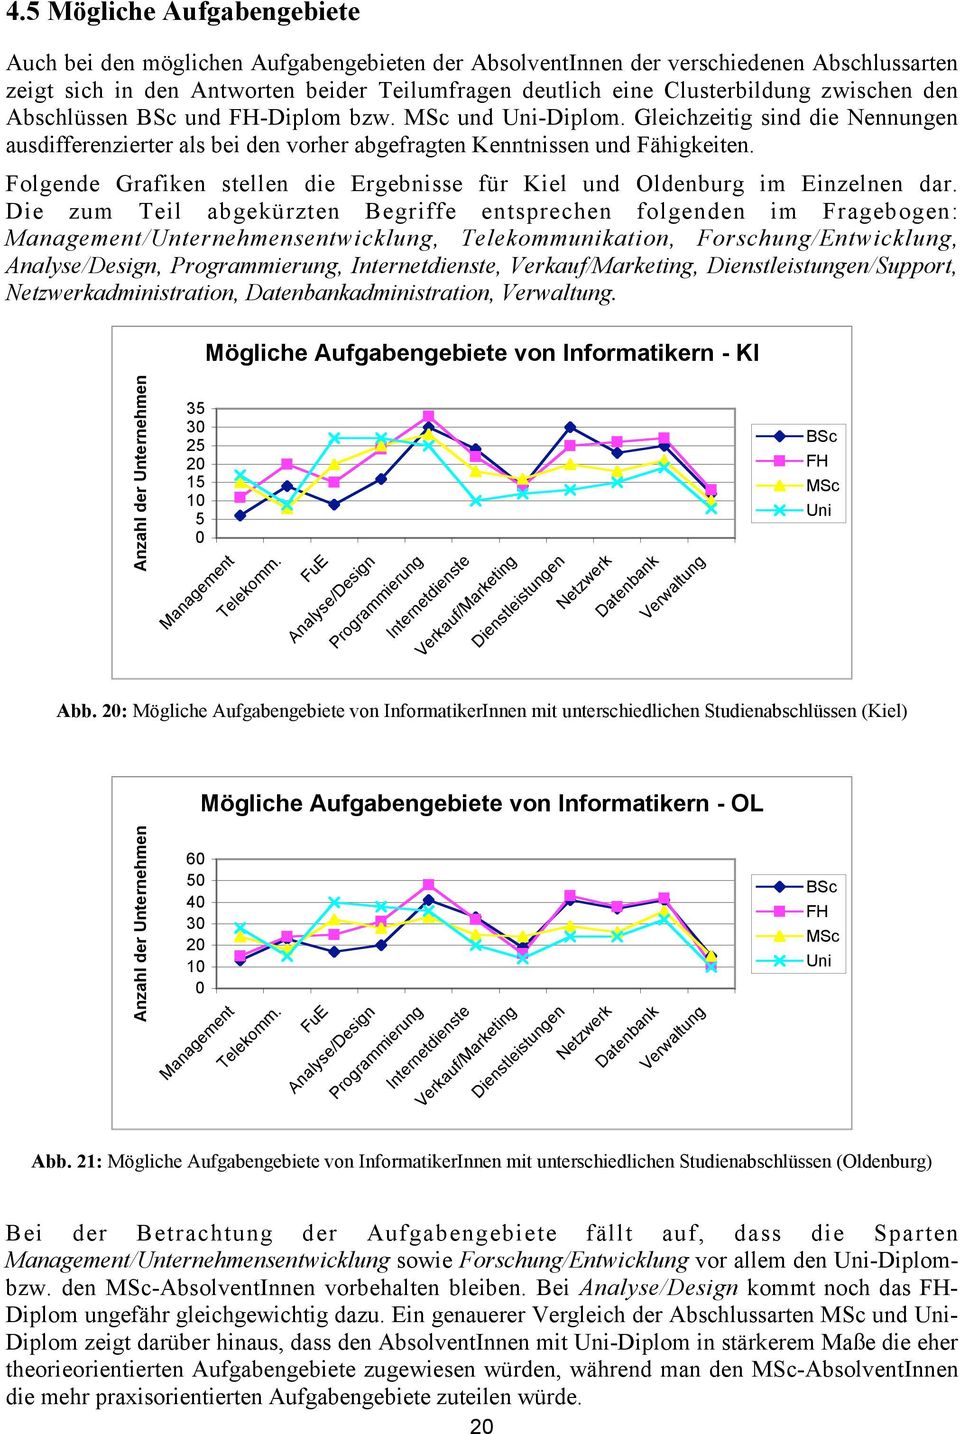 Folgende Grafiken stellen die Ergebnisse für Kiel und Oldenburg im Einzelnen dar.